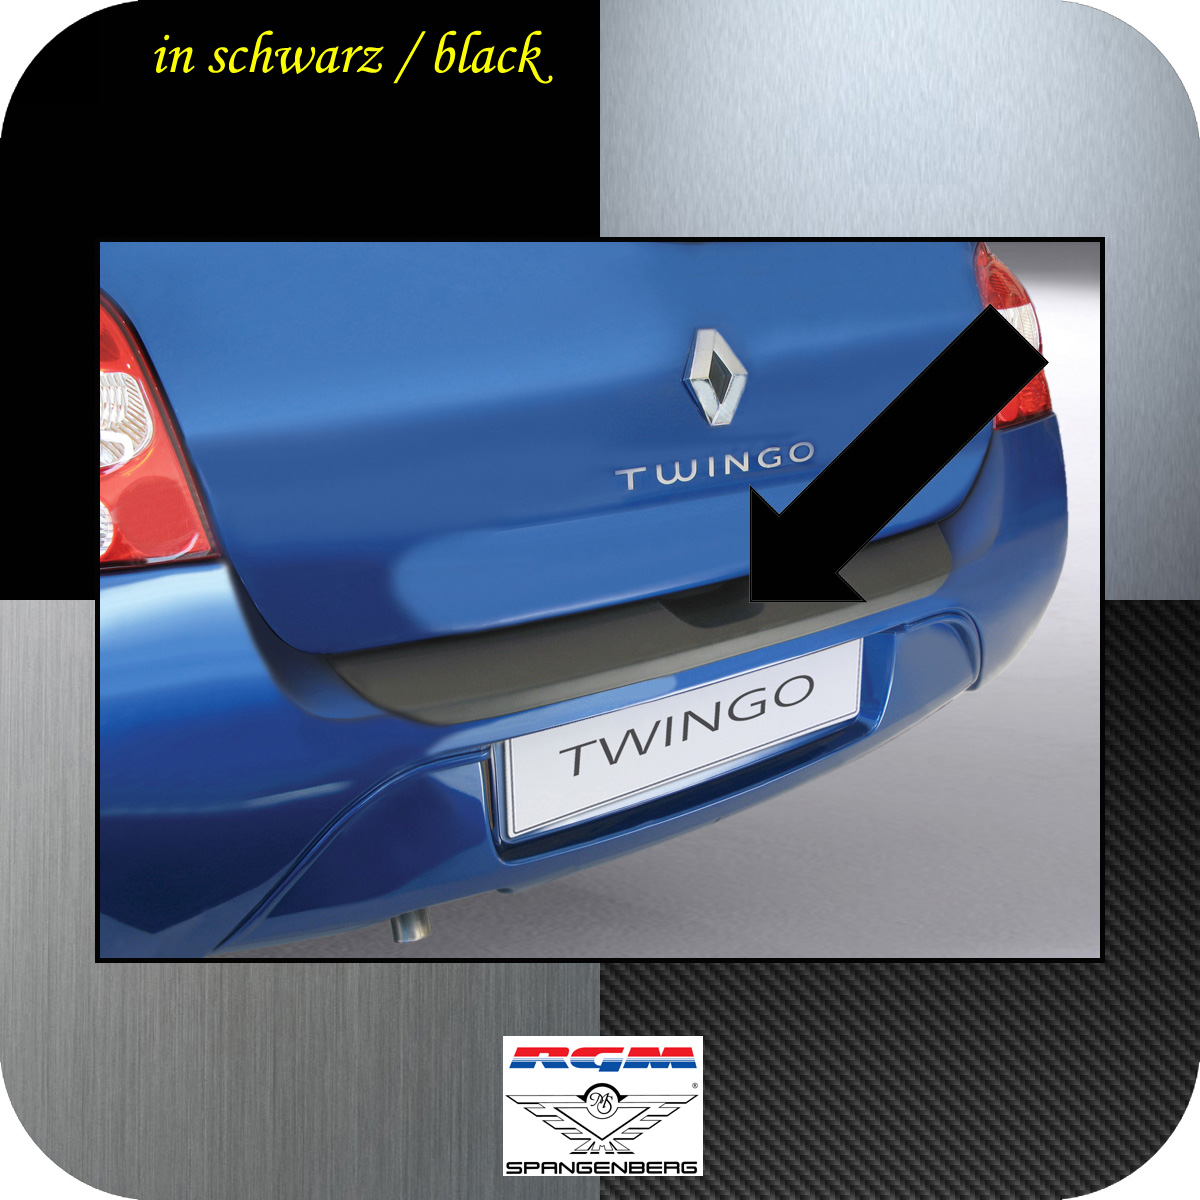 Ladekantenschutz schwarz Renault Twingo II 3-Türer vor Mopf 2007-11 3500147